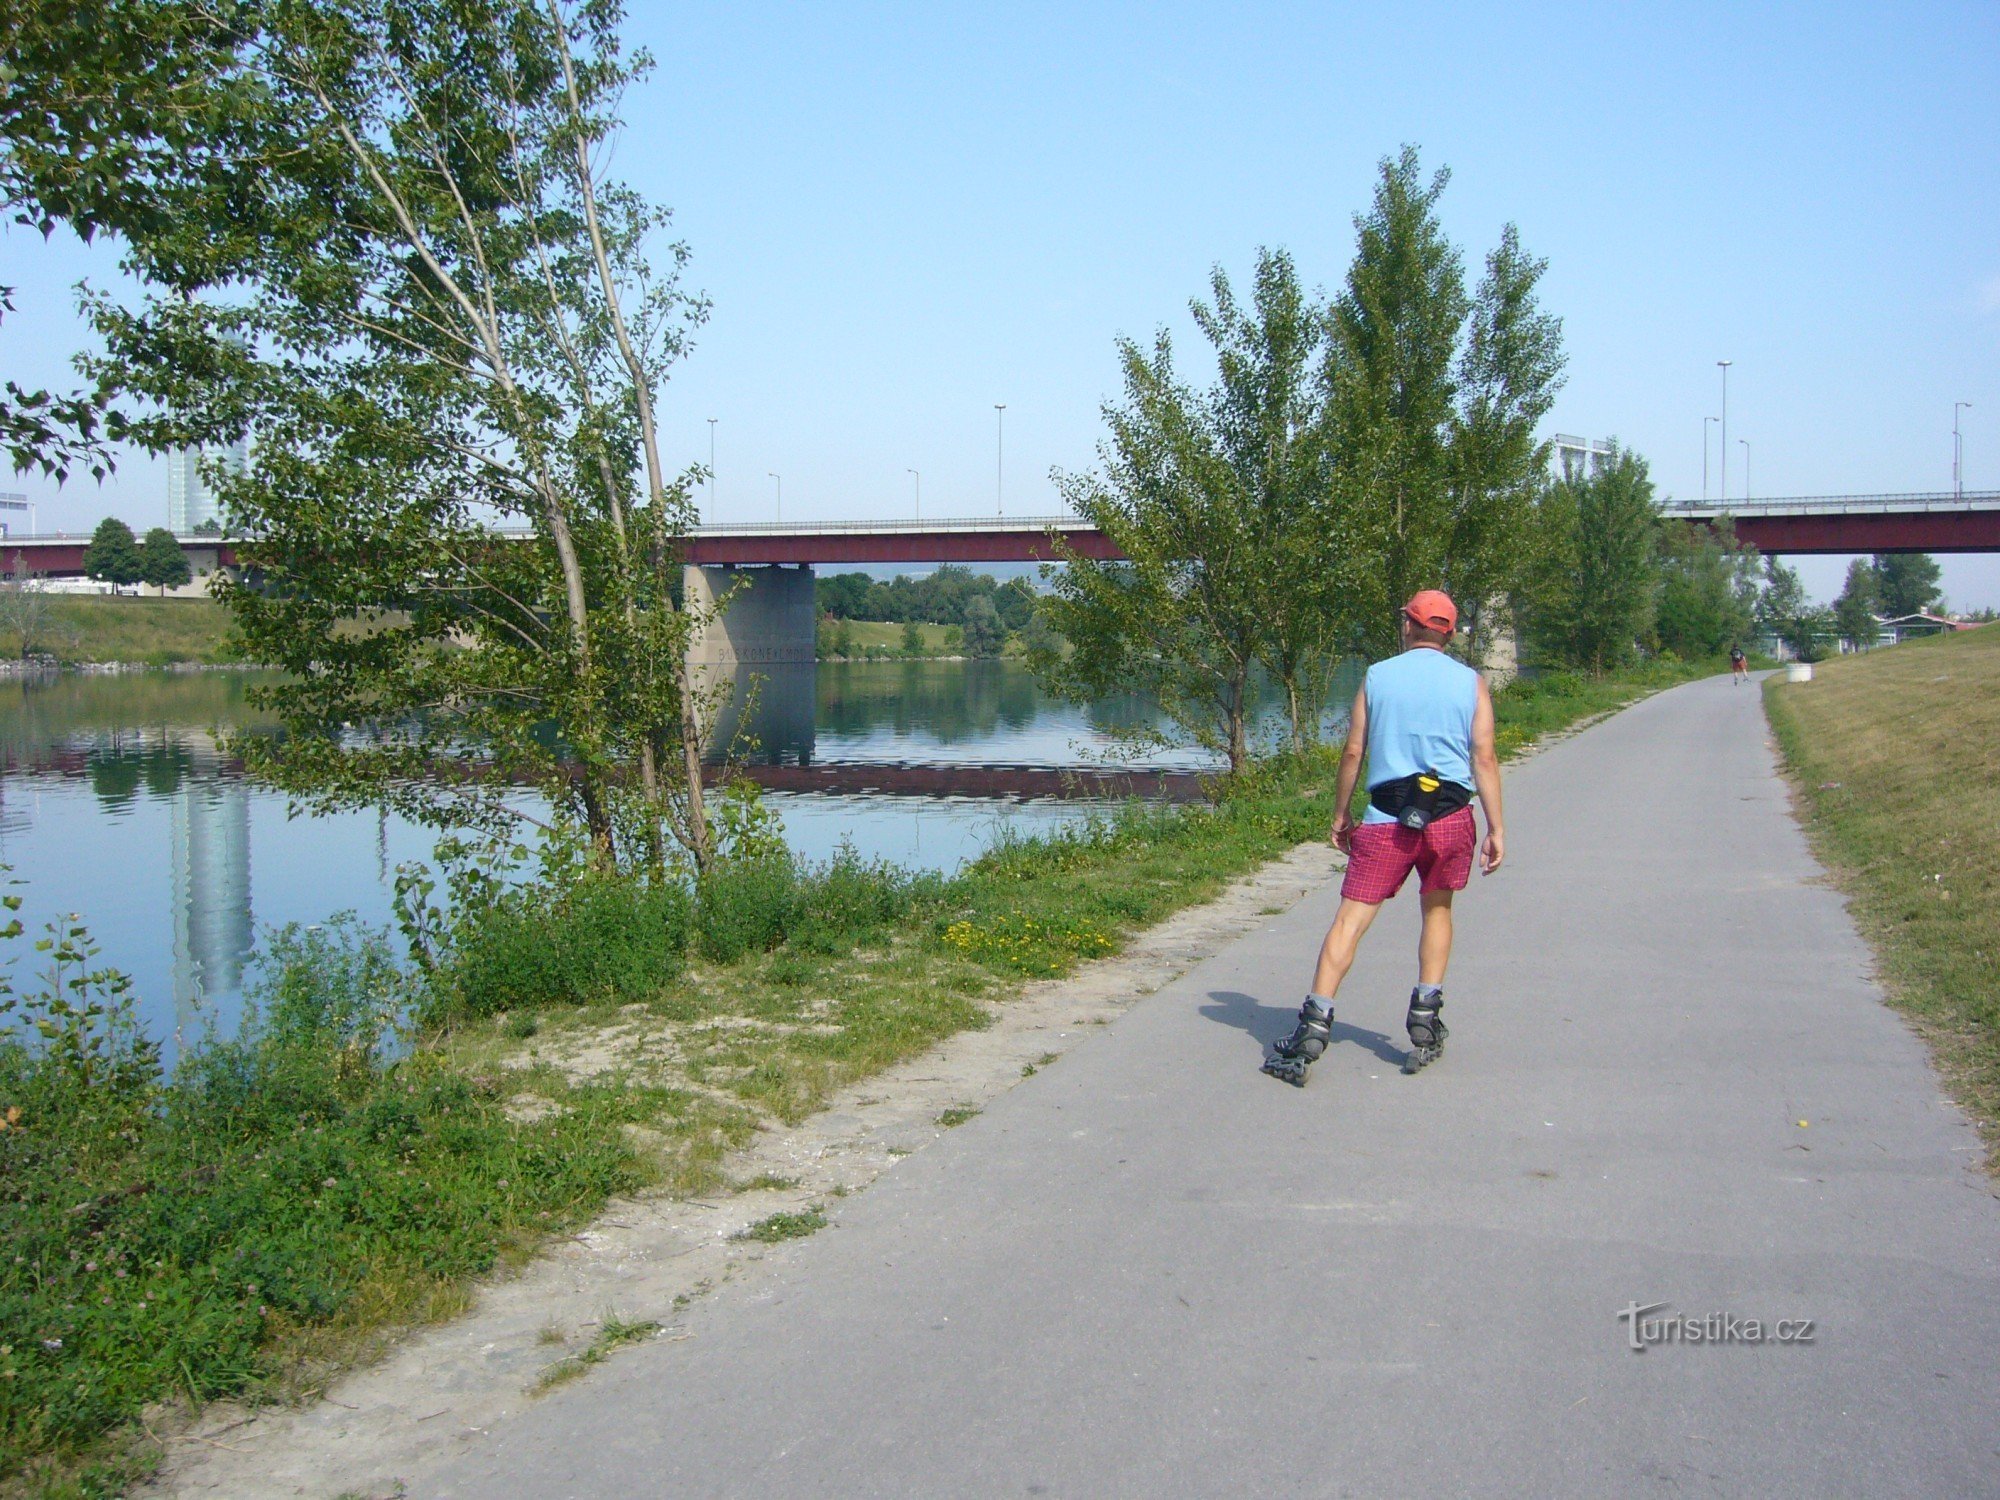 Rutas ciclistas vienesas a lo largo del Danubio en In-lines: una vez que las pruebes, querrás volver